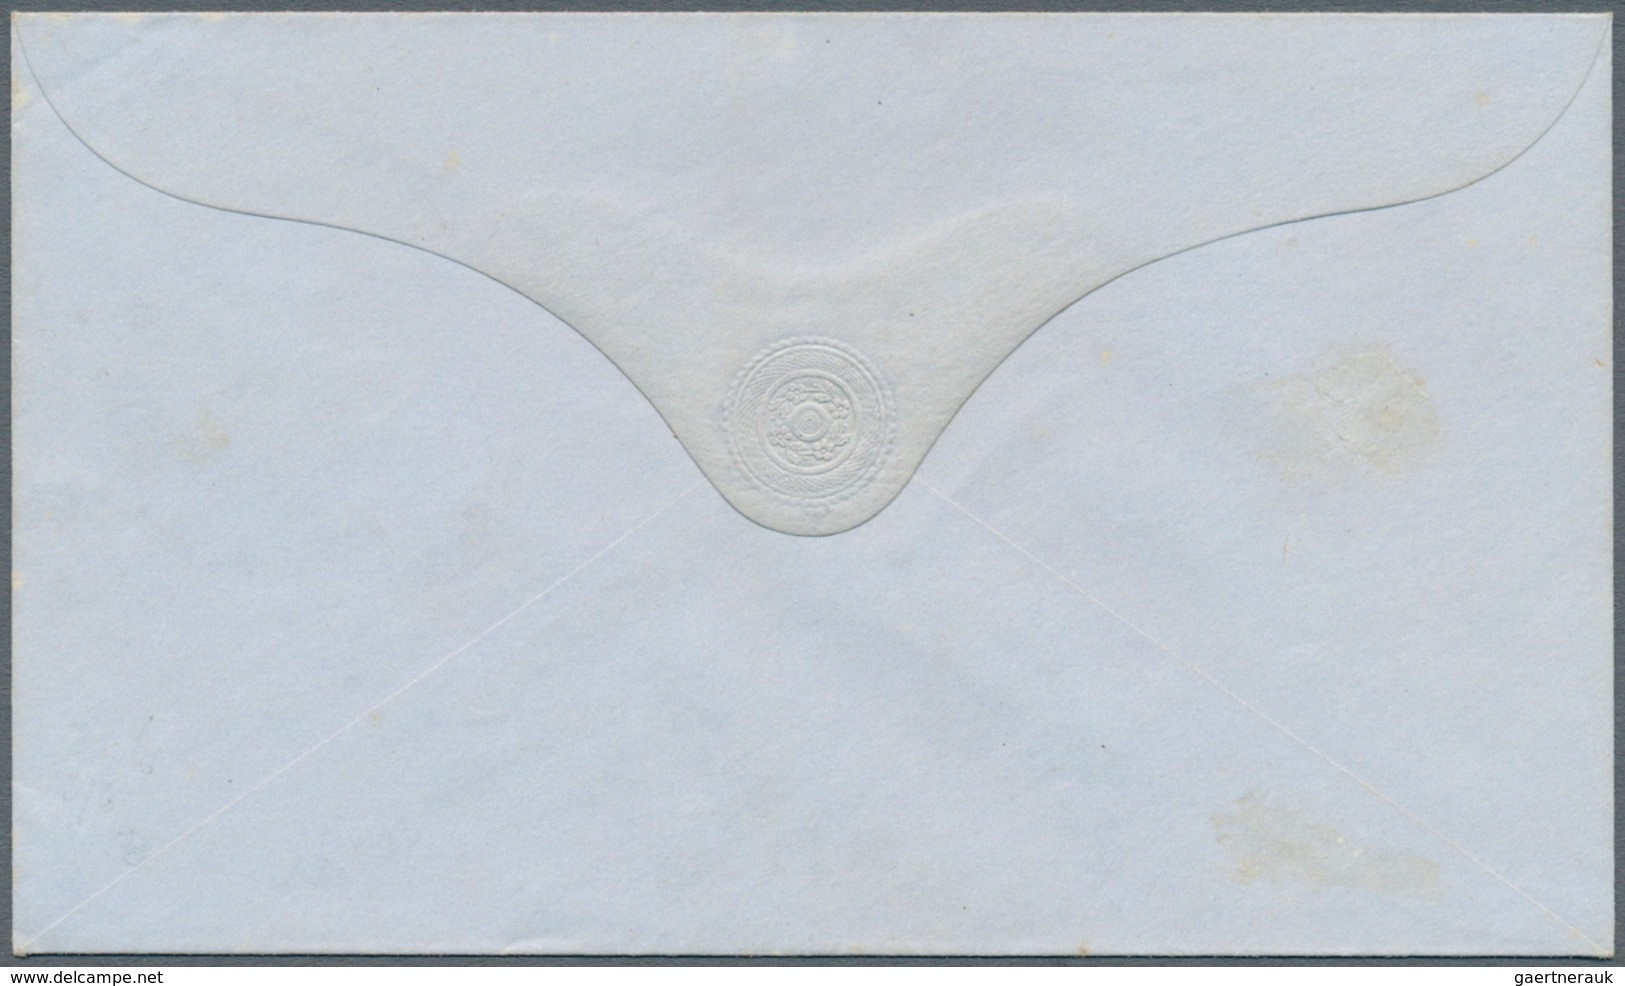 Mauritius: 1862, QV stationery envelopes (5): 6d (3, HG1a x2, 3d), 9d (2, HG 2, 2a) plus 6d (HG1) ov